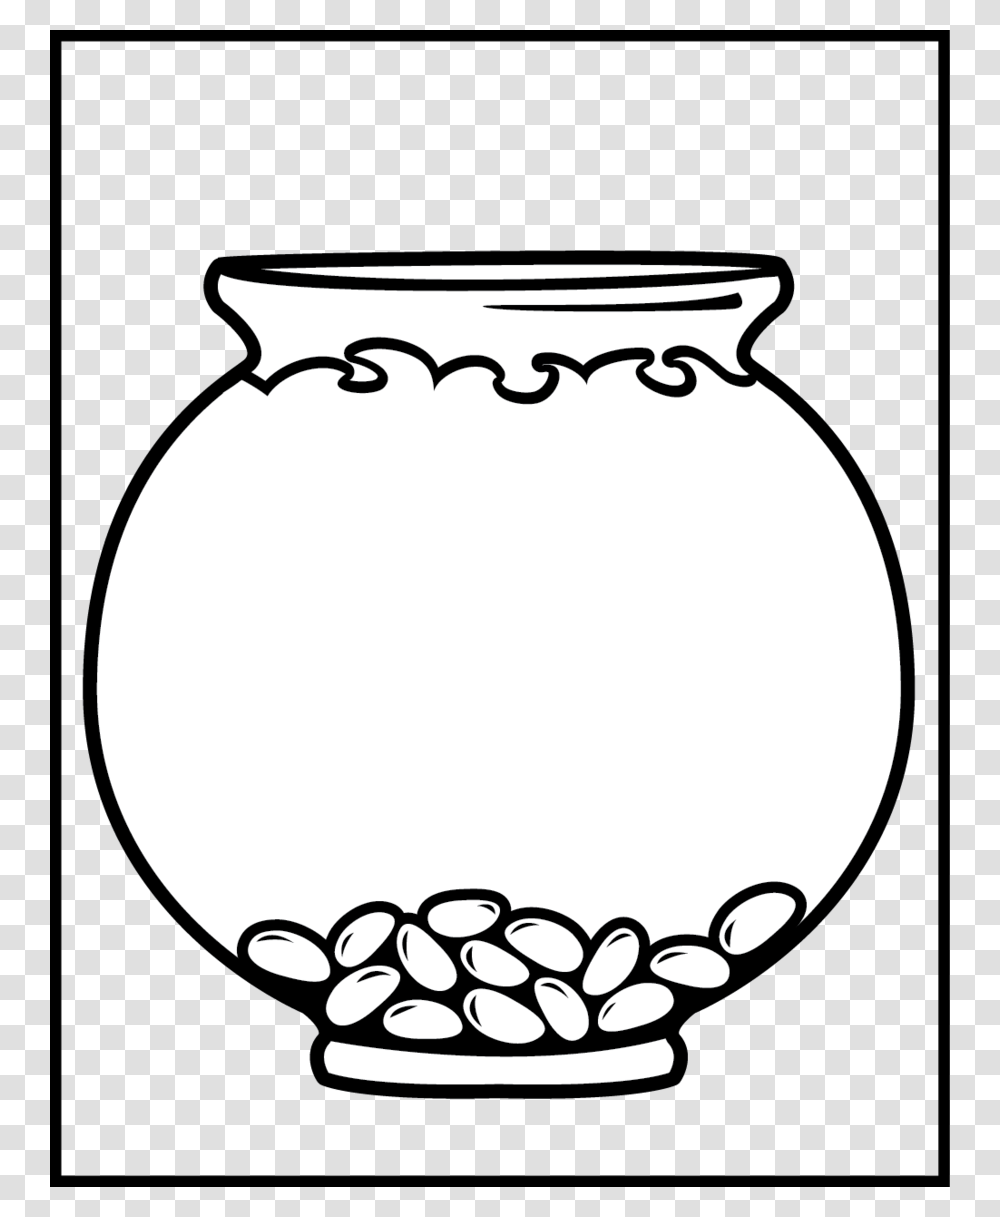 Download Fish Bowl Coloring, Jar, Pottery, Urn, Vase Transparent Png